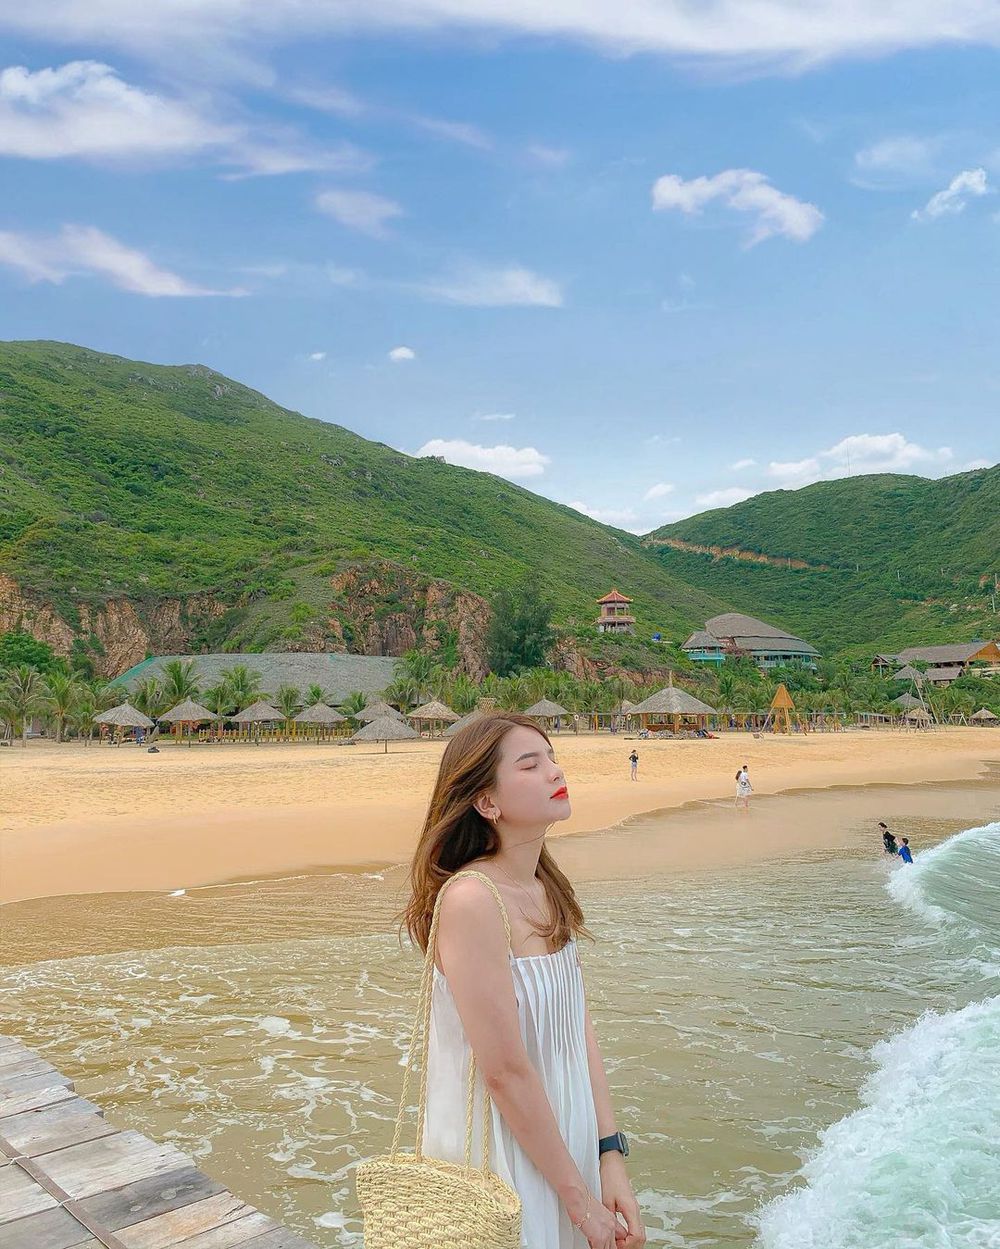 Clip cận cảnh bãi biển đẹp bậc nhất Việt Nam, làn nước mê hoặc đến nước bể bơi còn thua xa-3